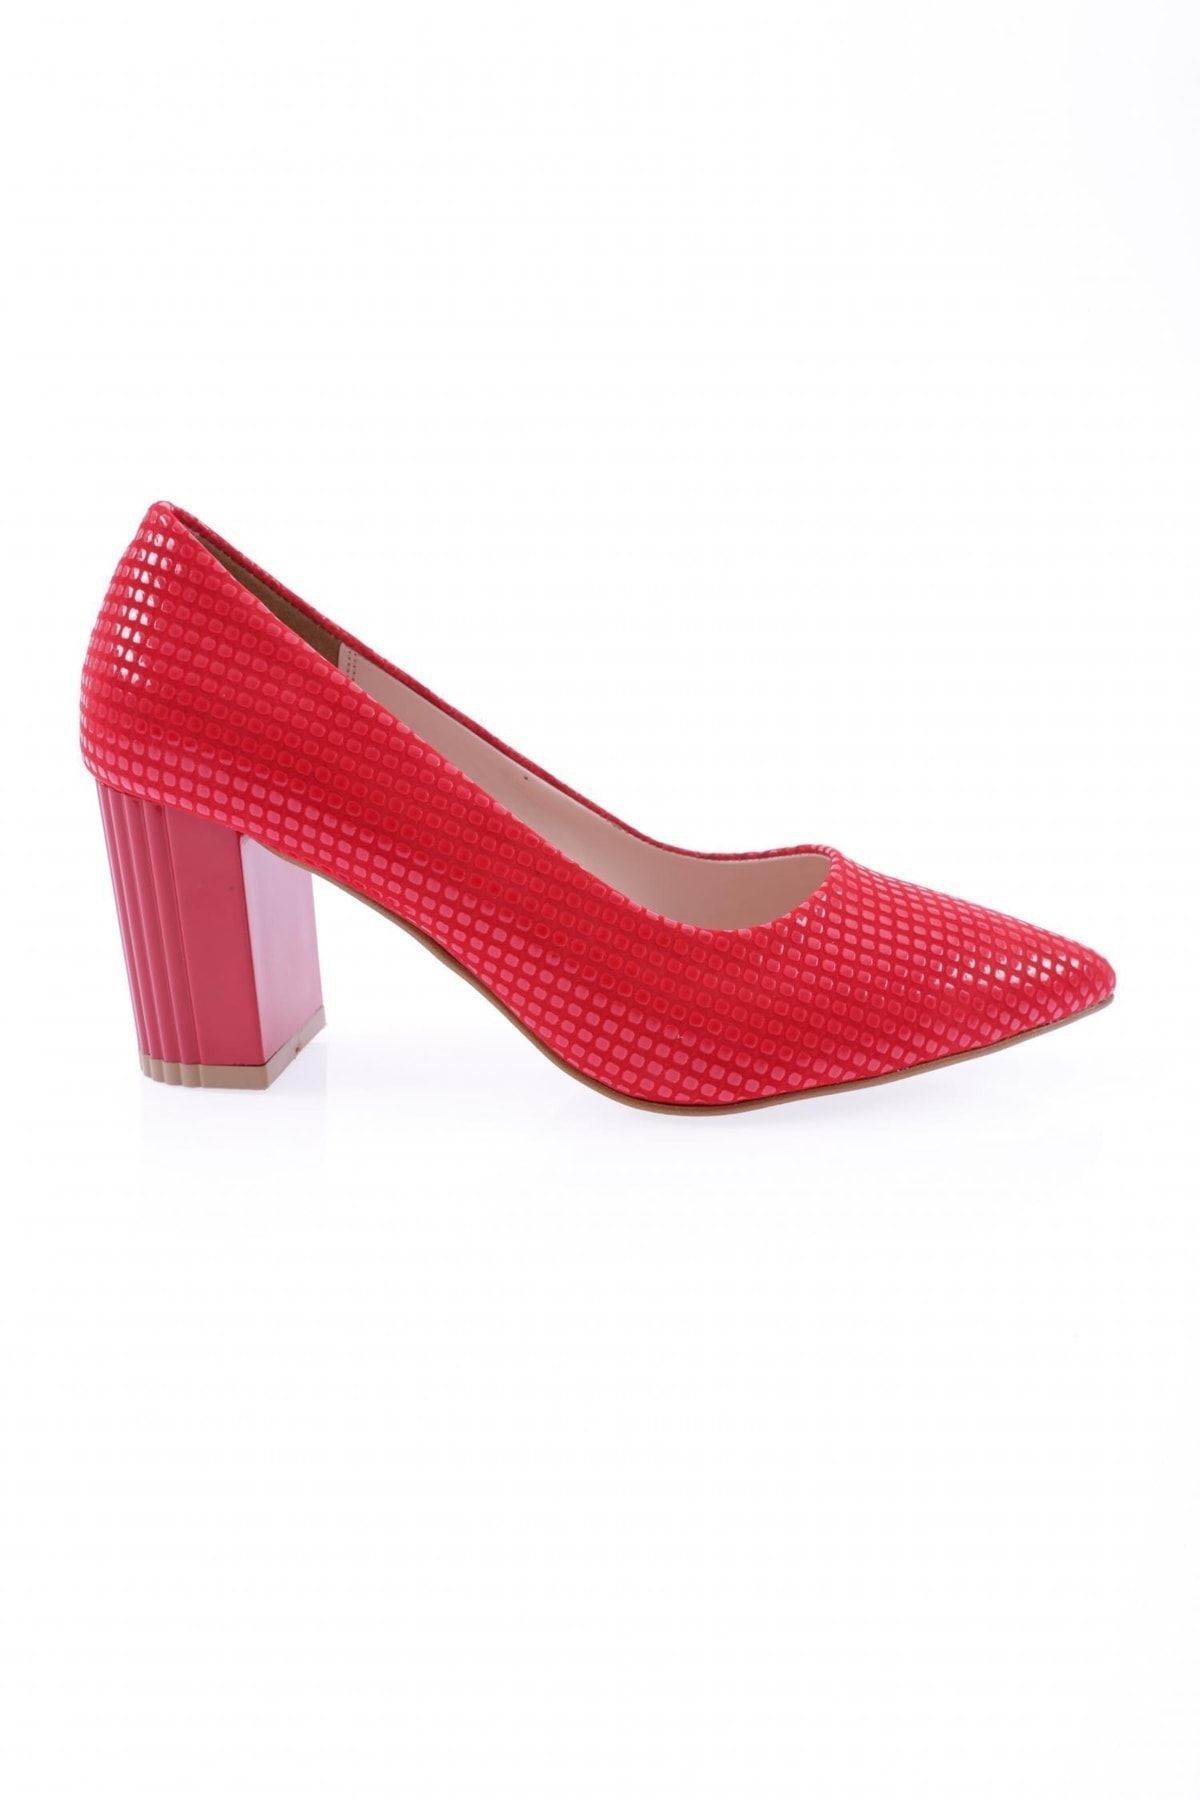 Dgn 126 Kadın Sivri Burun Uzun Topuklu Ayakkabı Kırmızı Petek